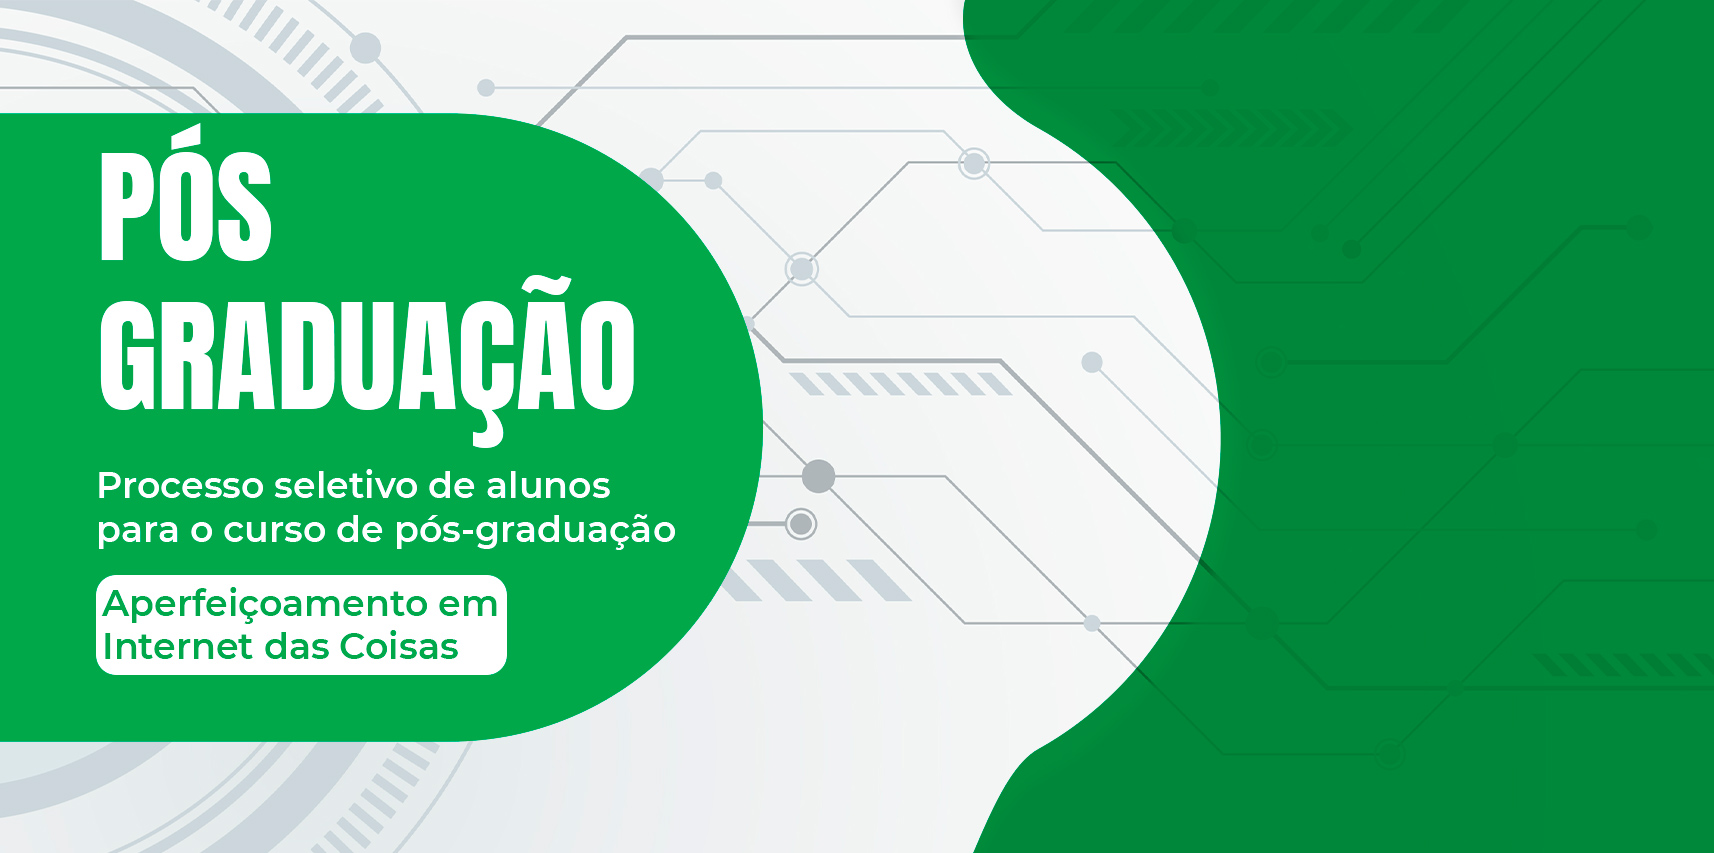 Unac e Ifes lançam processo seletivo para curso de Pós-graduação em Internet das Coisas para Vargem Alta